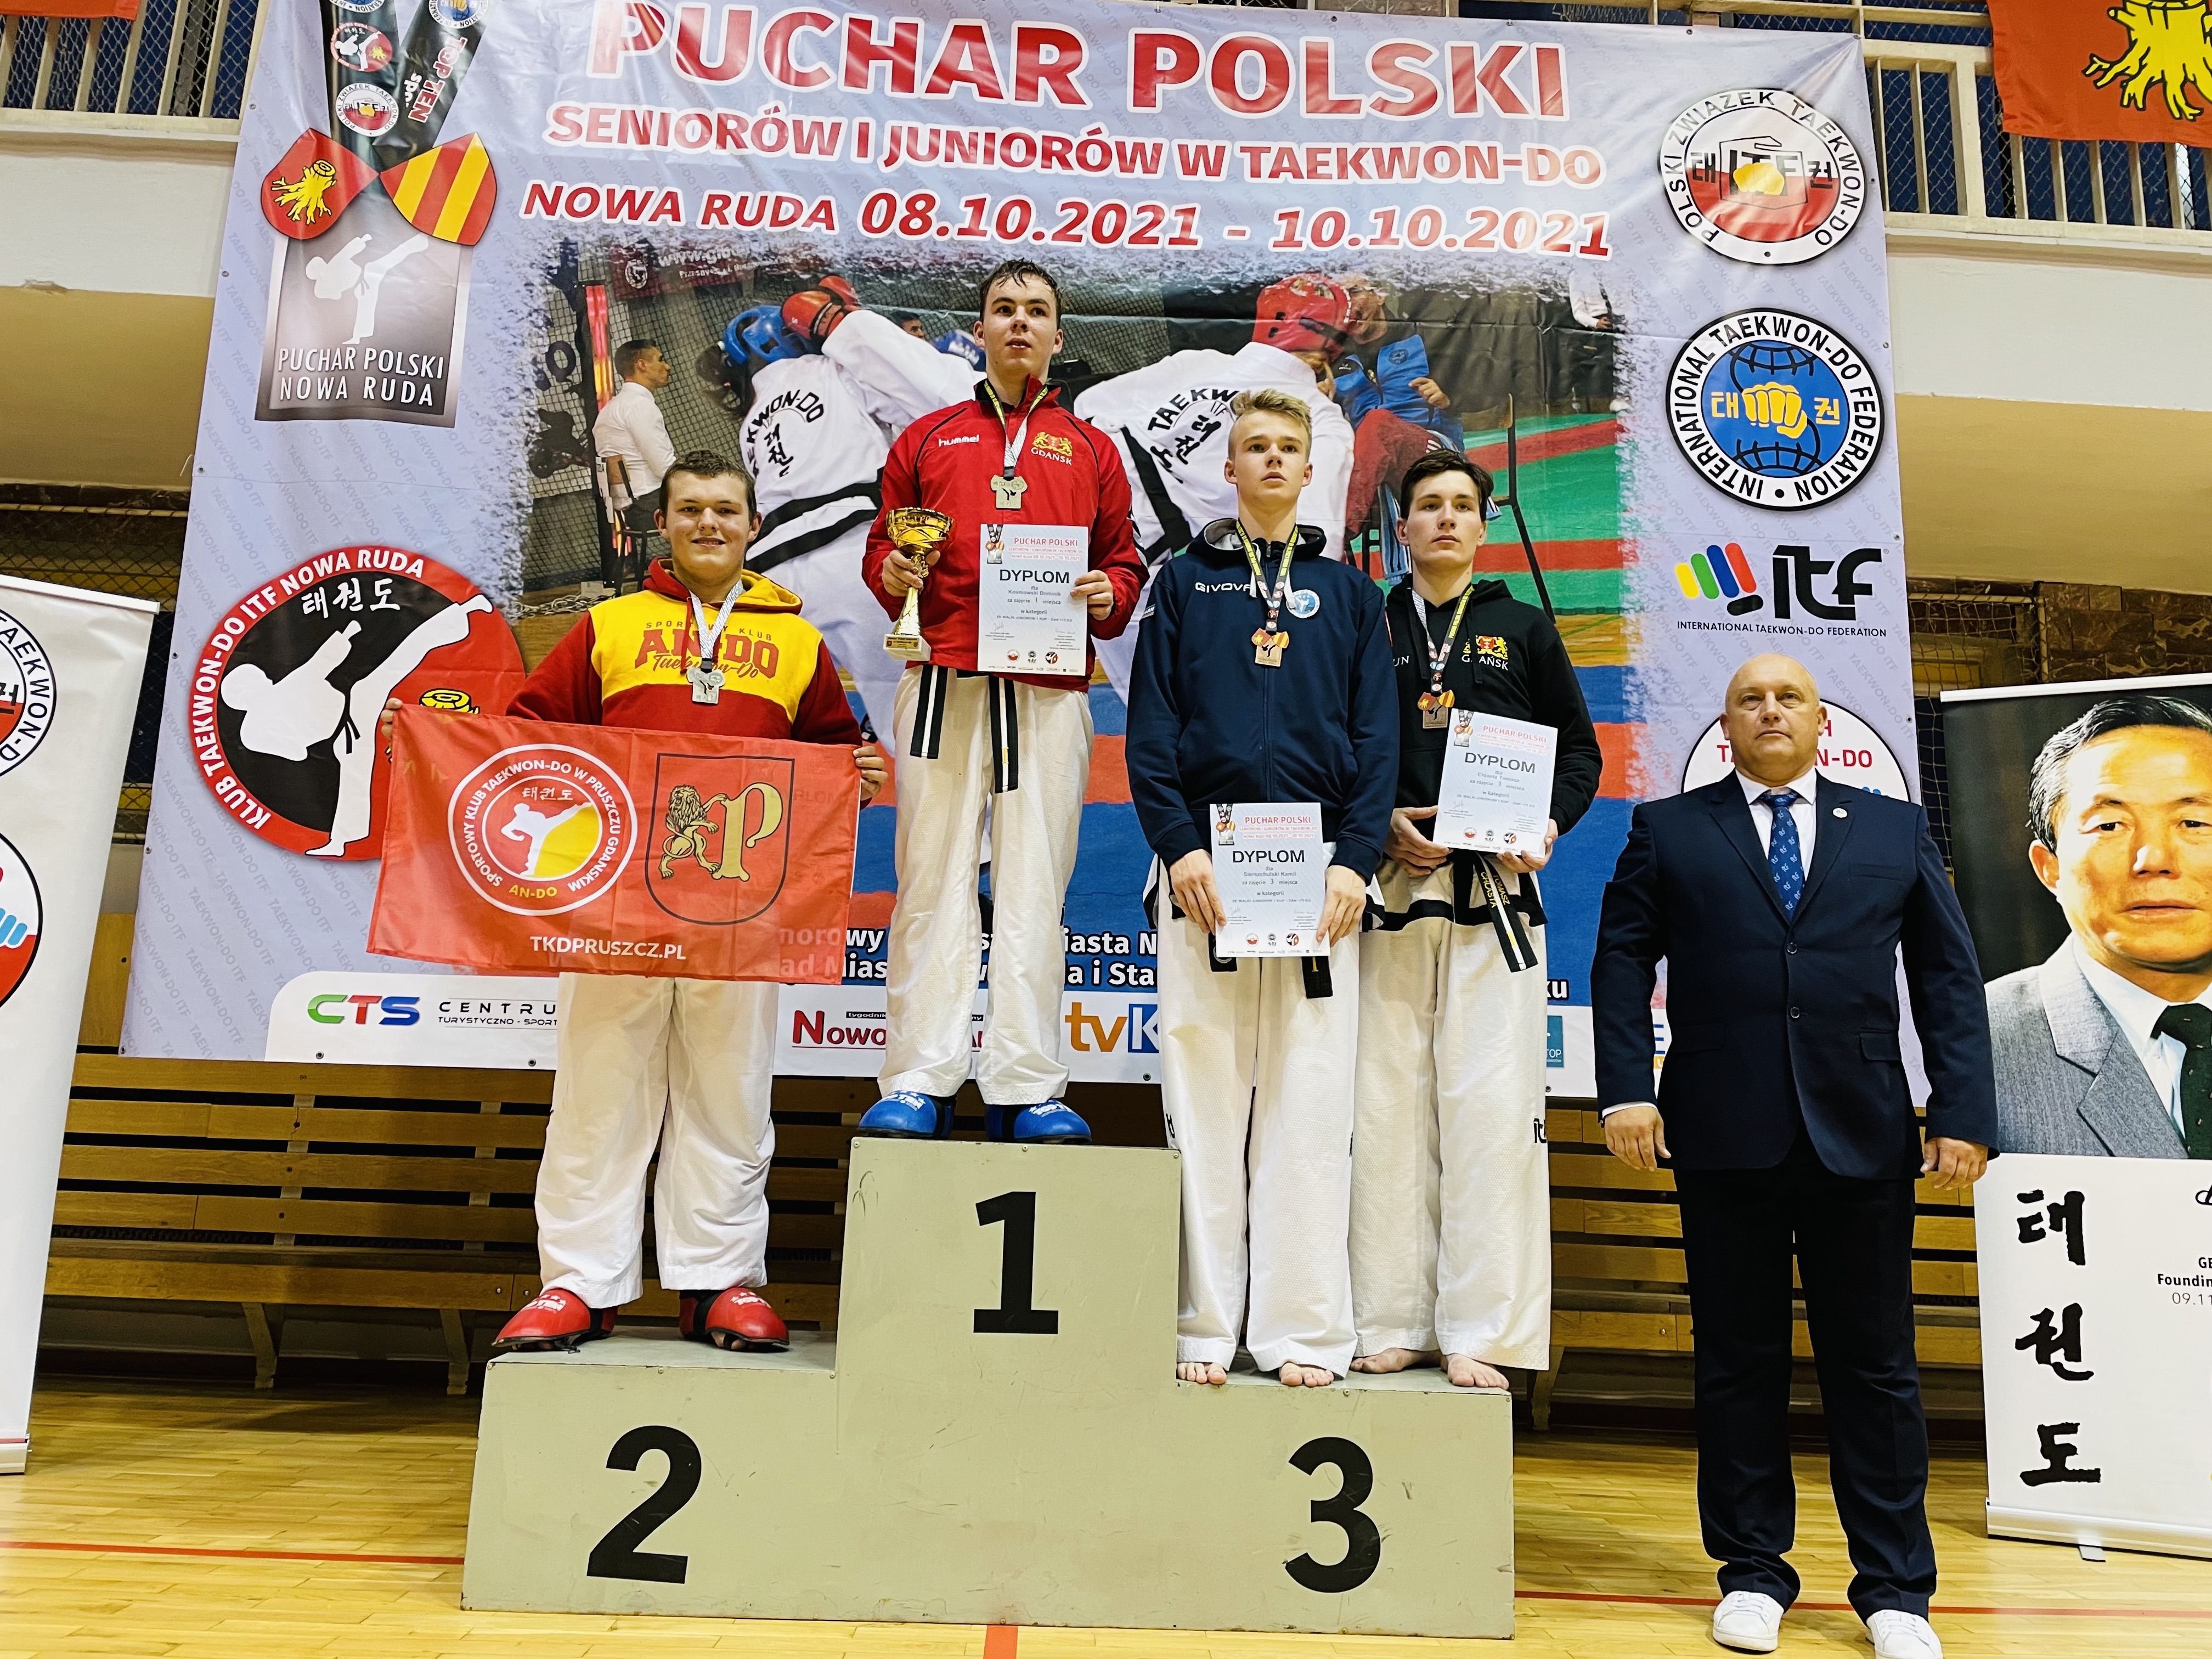 6 medali Pucharu Polski dla Pruszcza Gdańskiego